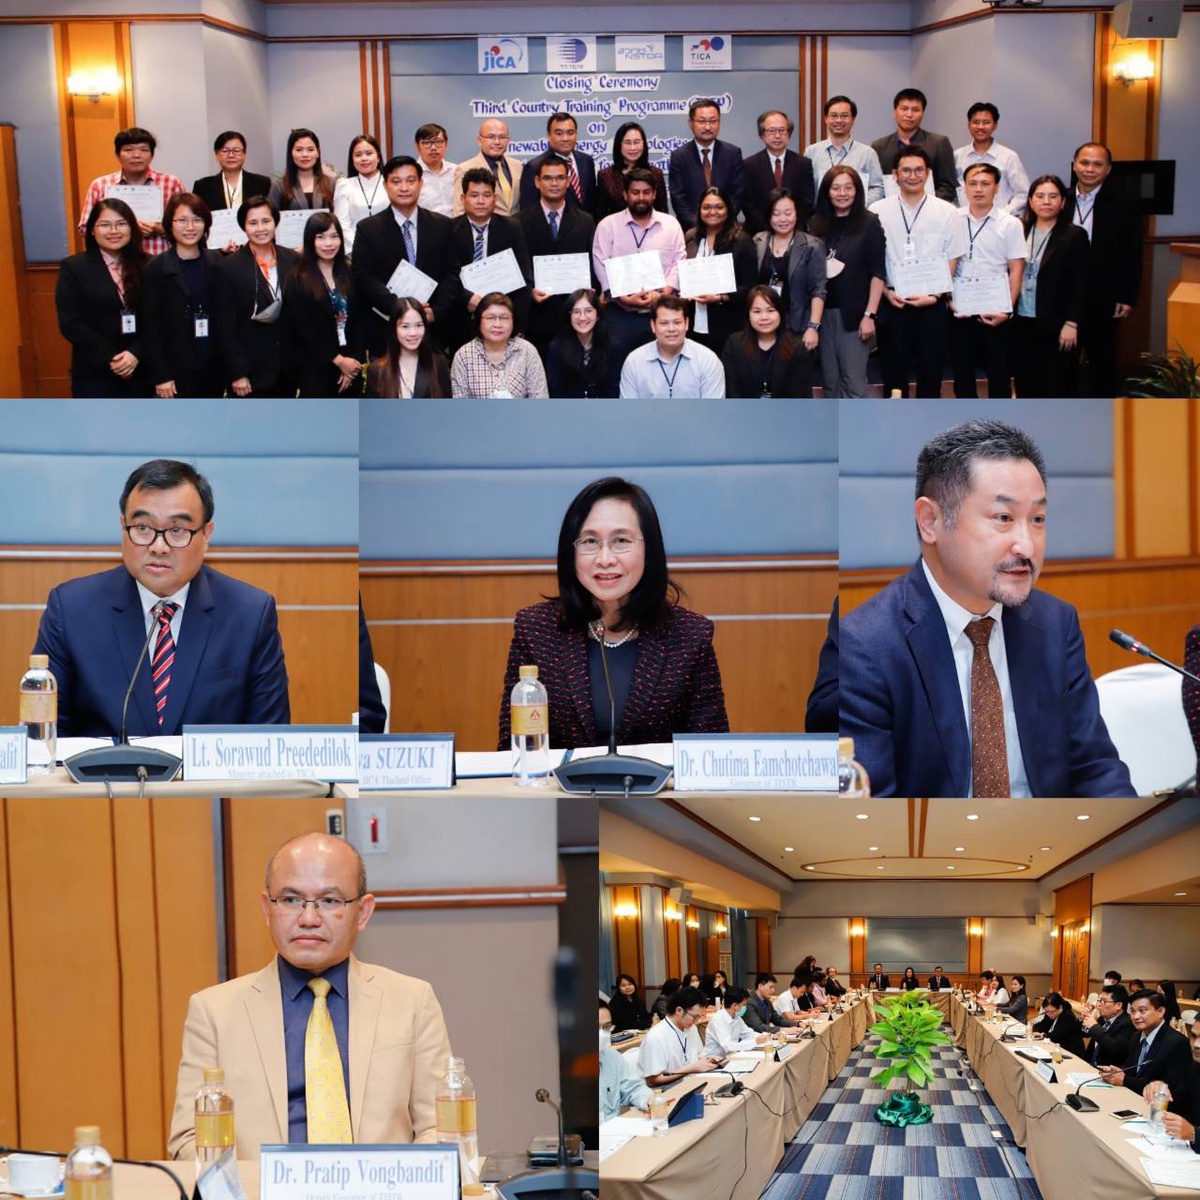 วว./สวทช. มอบประกาศนียบัตร เนื่องในพิธีปิดการอบรมเชิงปฏิบัติการ Renewable Energy Technologies and Knowledge Transfer for Strengthening and achieving ASEAN's Sustainable Development